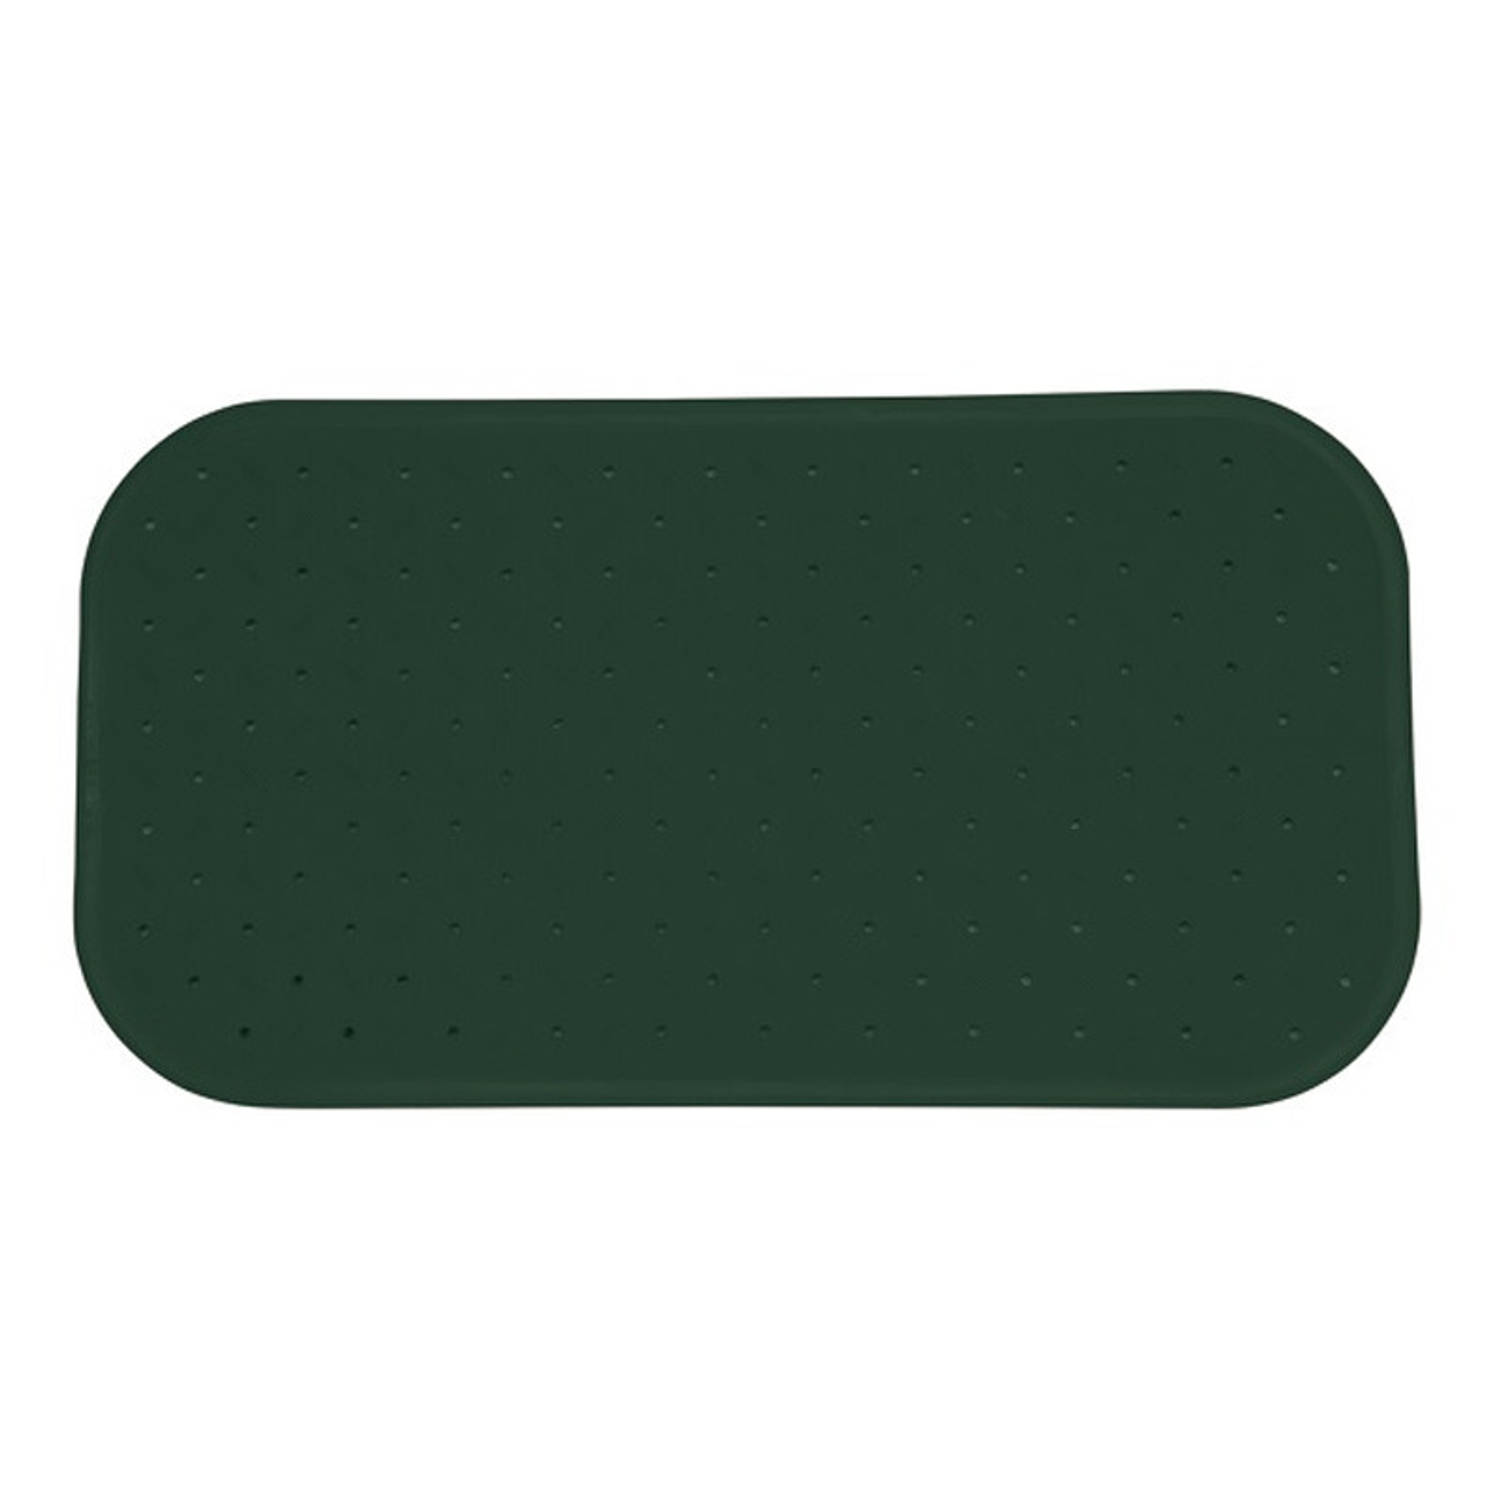 MSV Douche/bad anti-slip mat badkamer - rubber - groen - 36 x 76 cm - met zuignappen